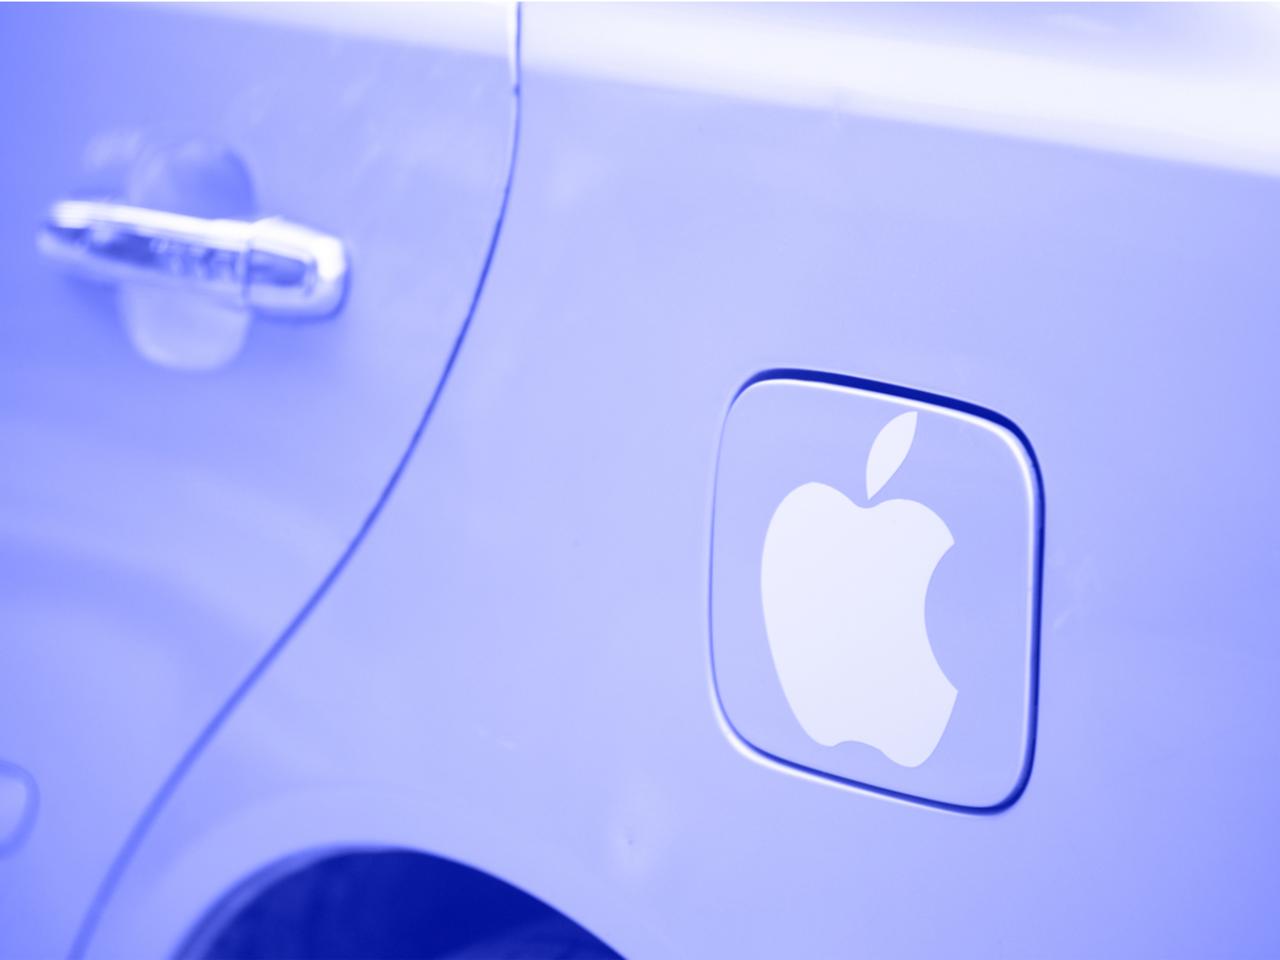 Appleと韓国自動車メーカーの交渉がストップ中らしい